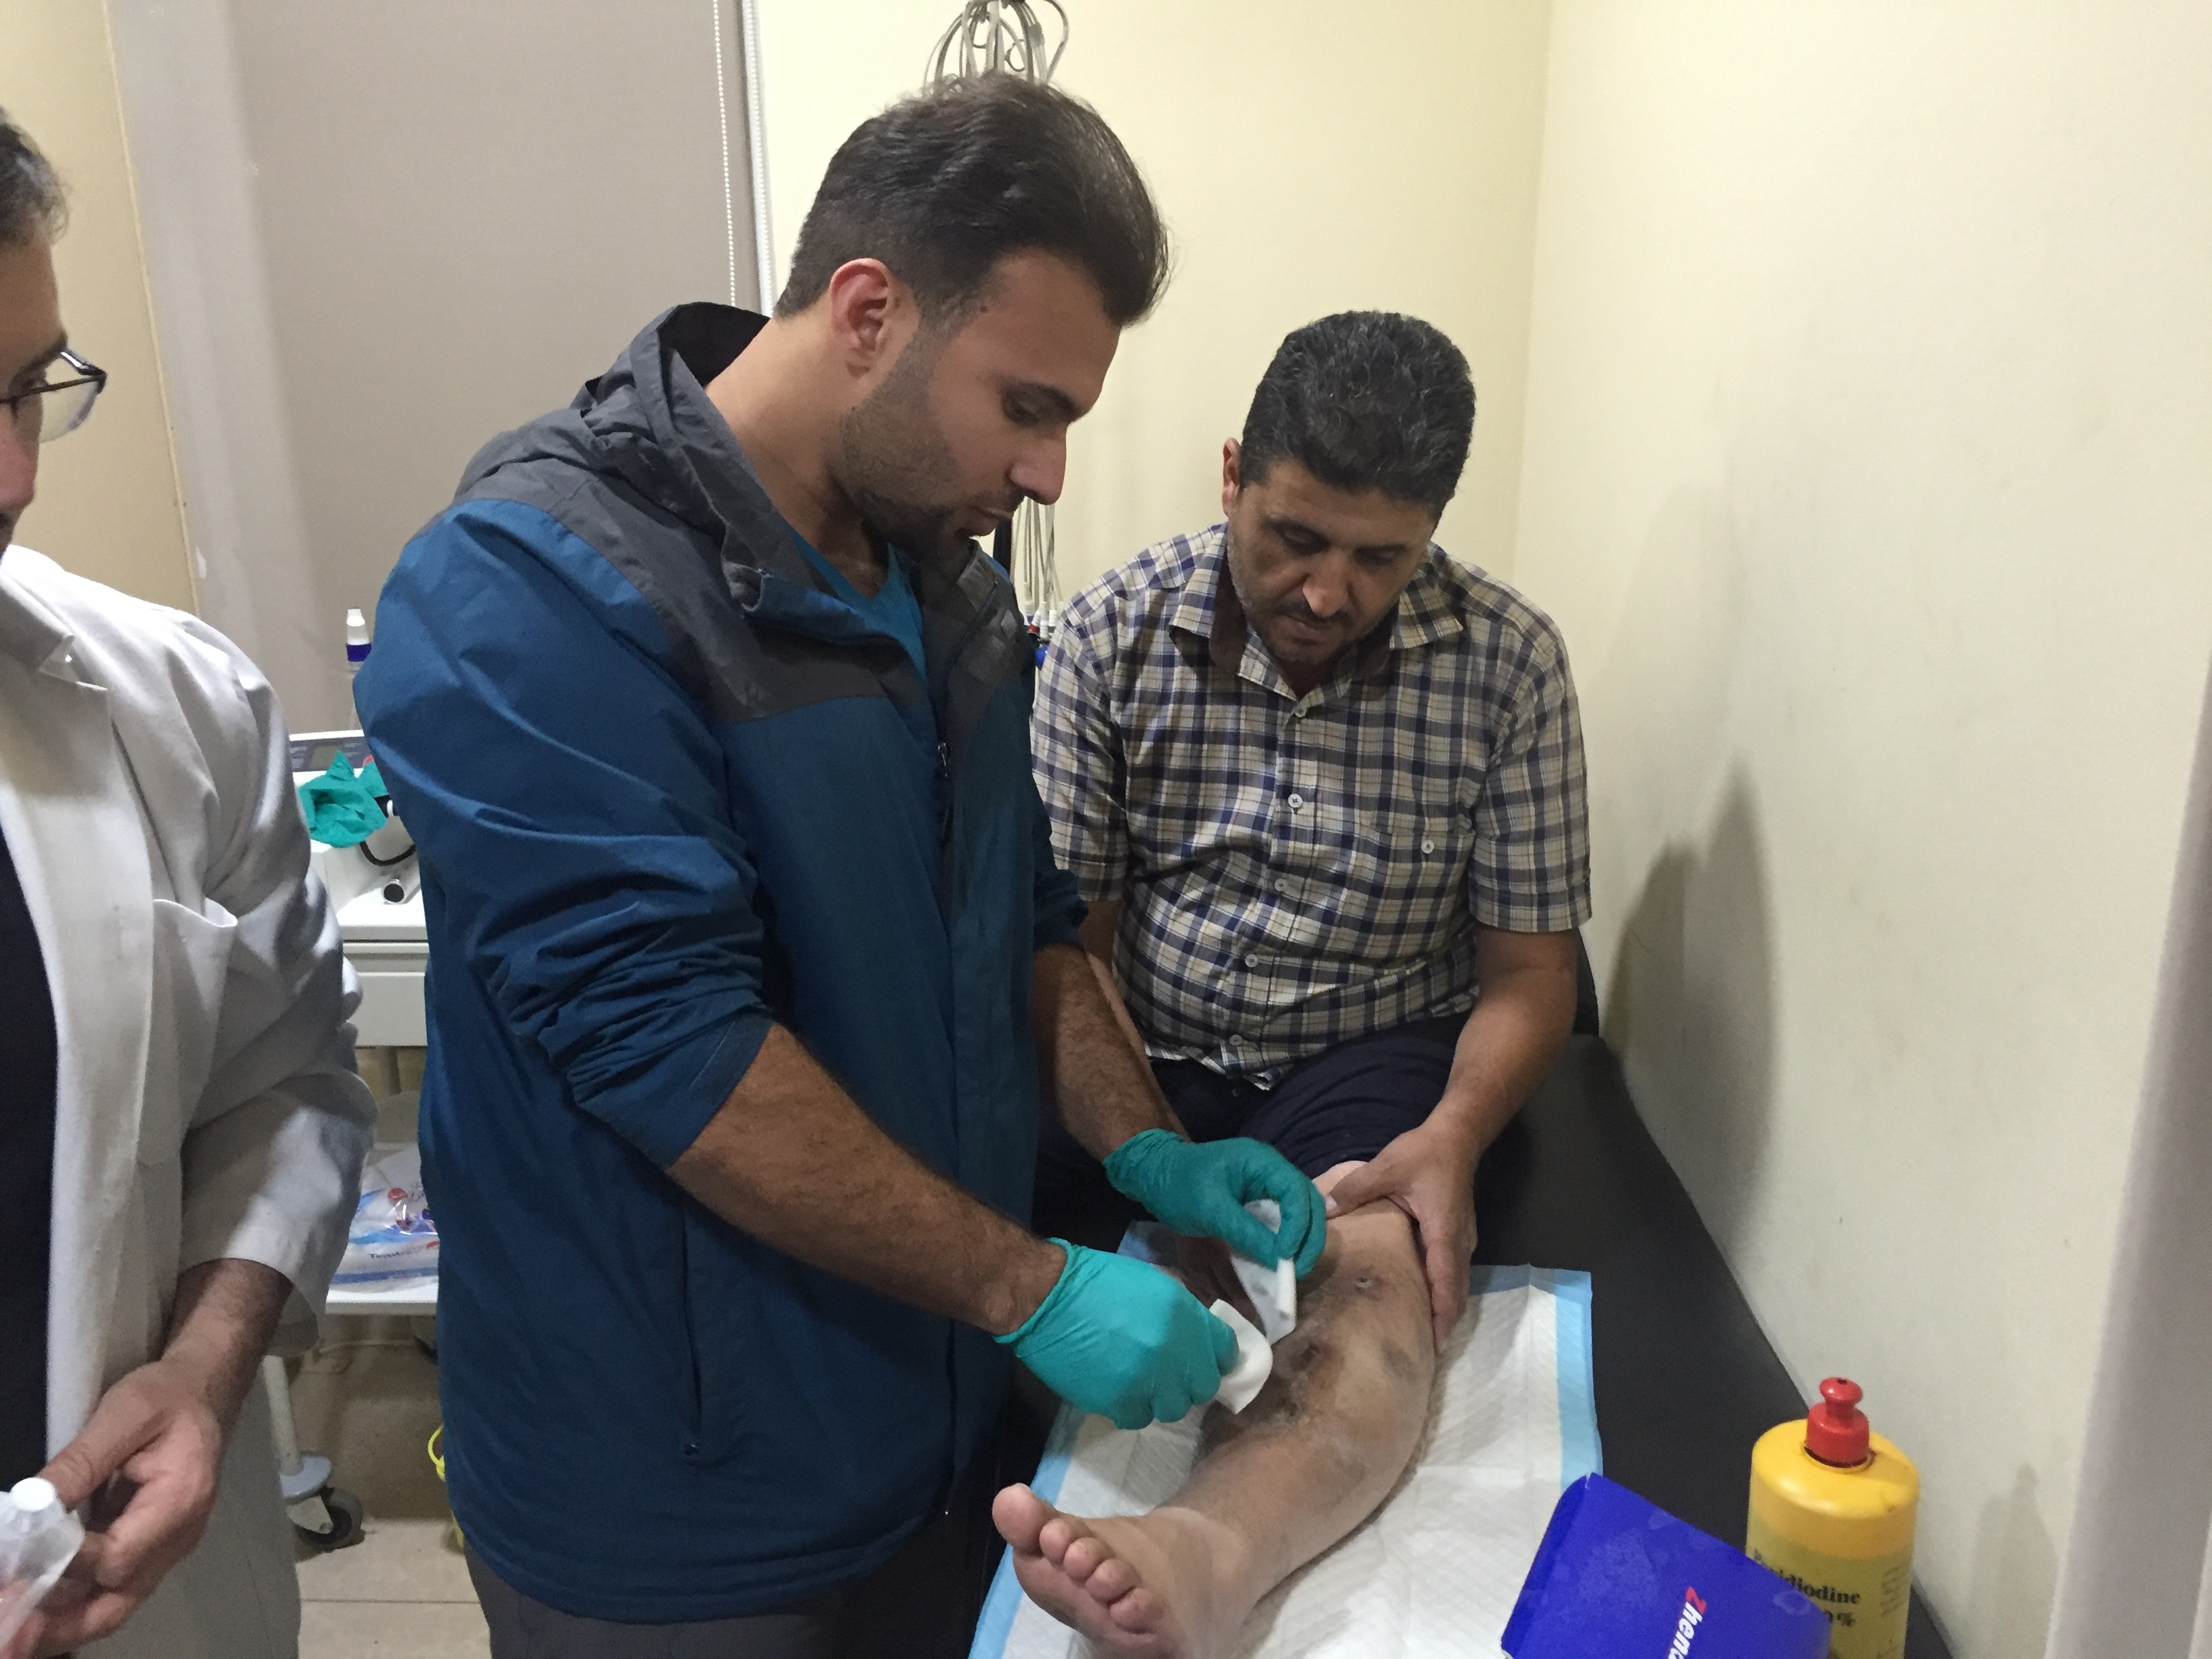 عضو فريق الجمعية الطبية الكويتية احمد المحمد اثناء فحصه لأحد المرضى